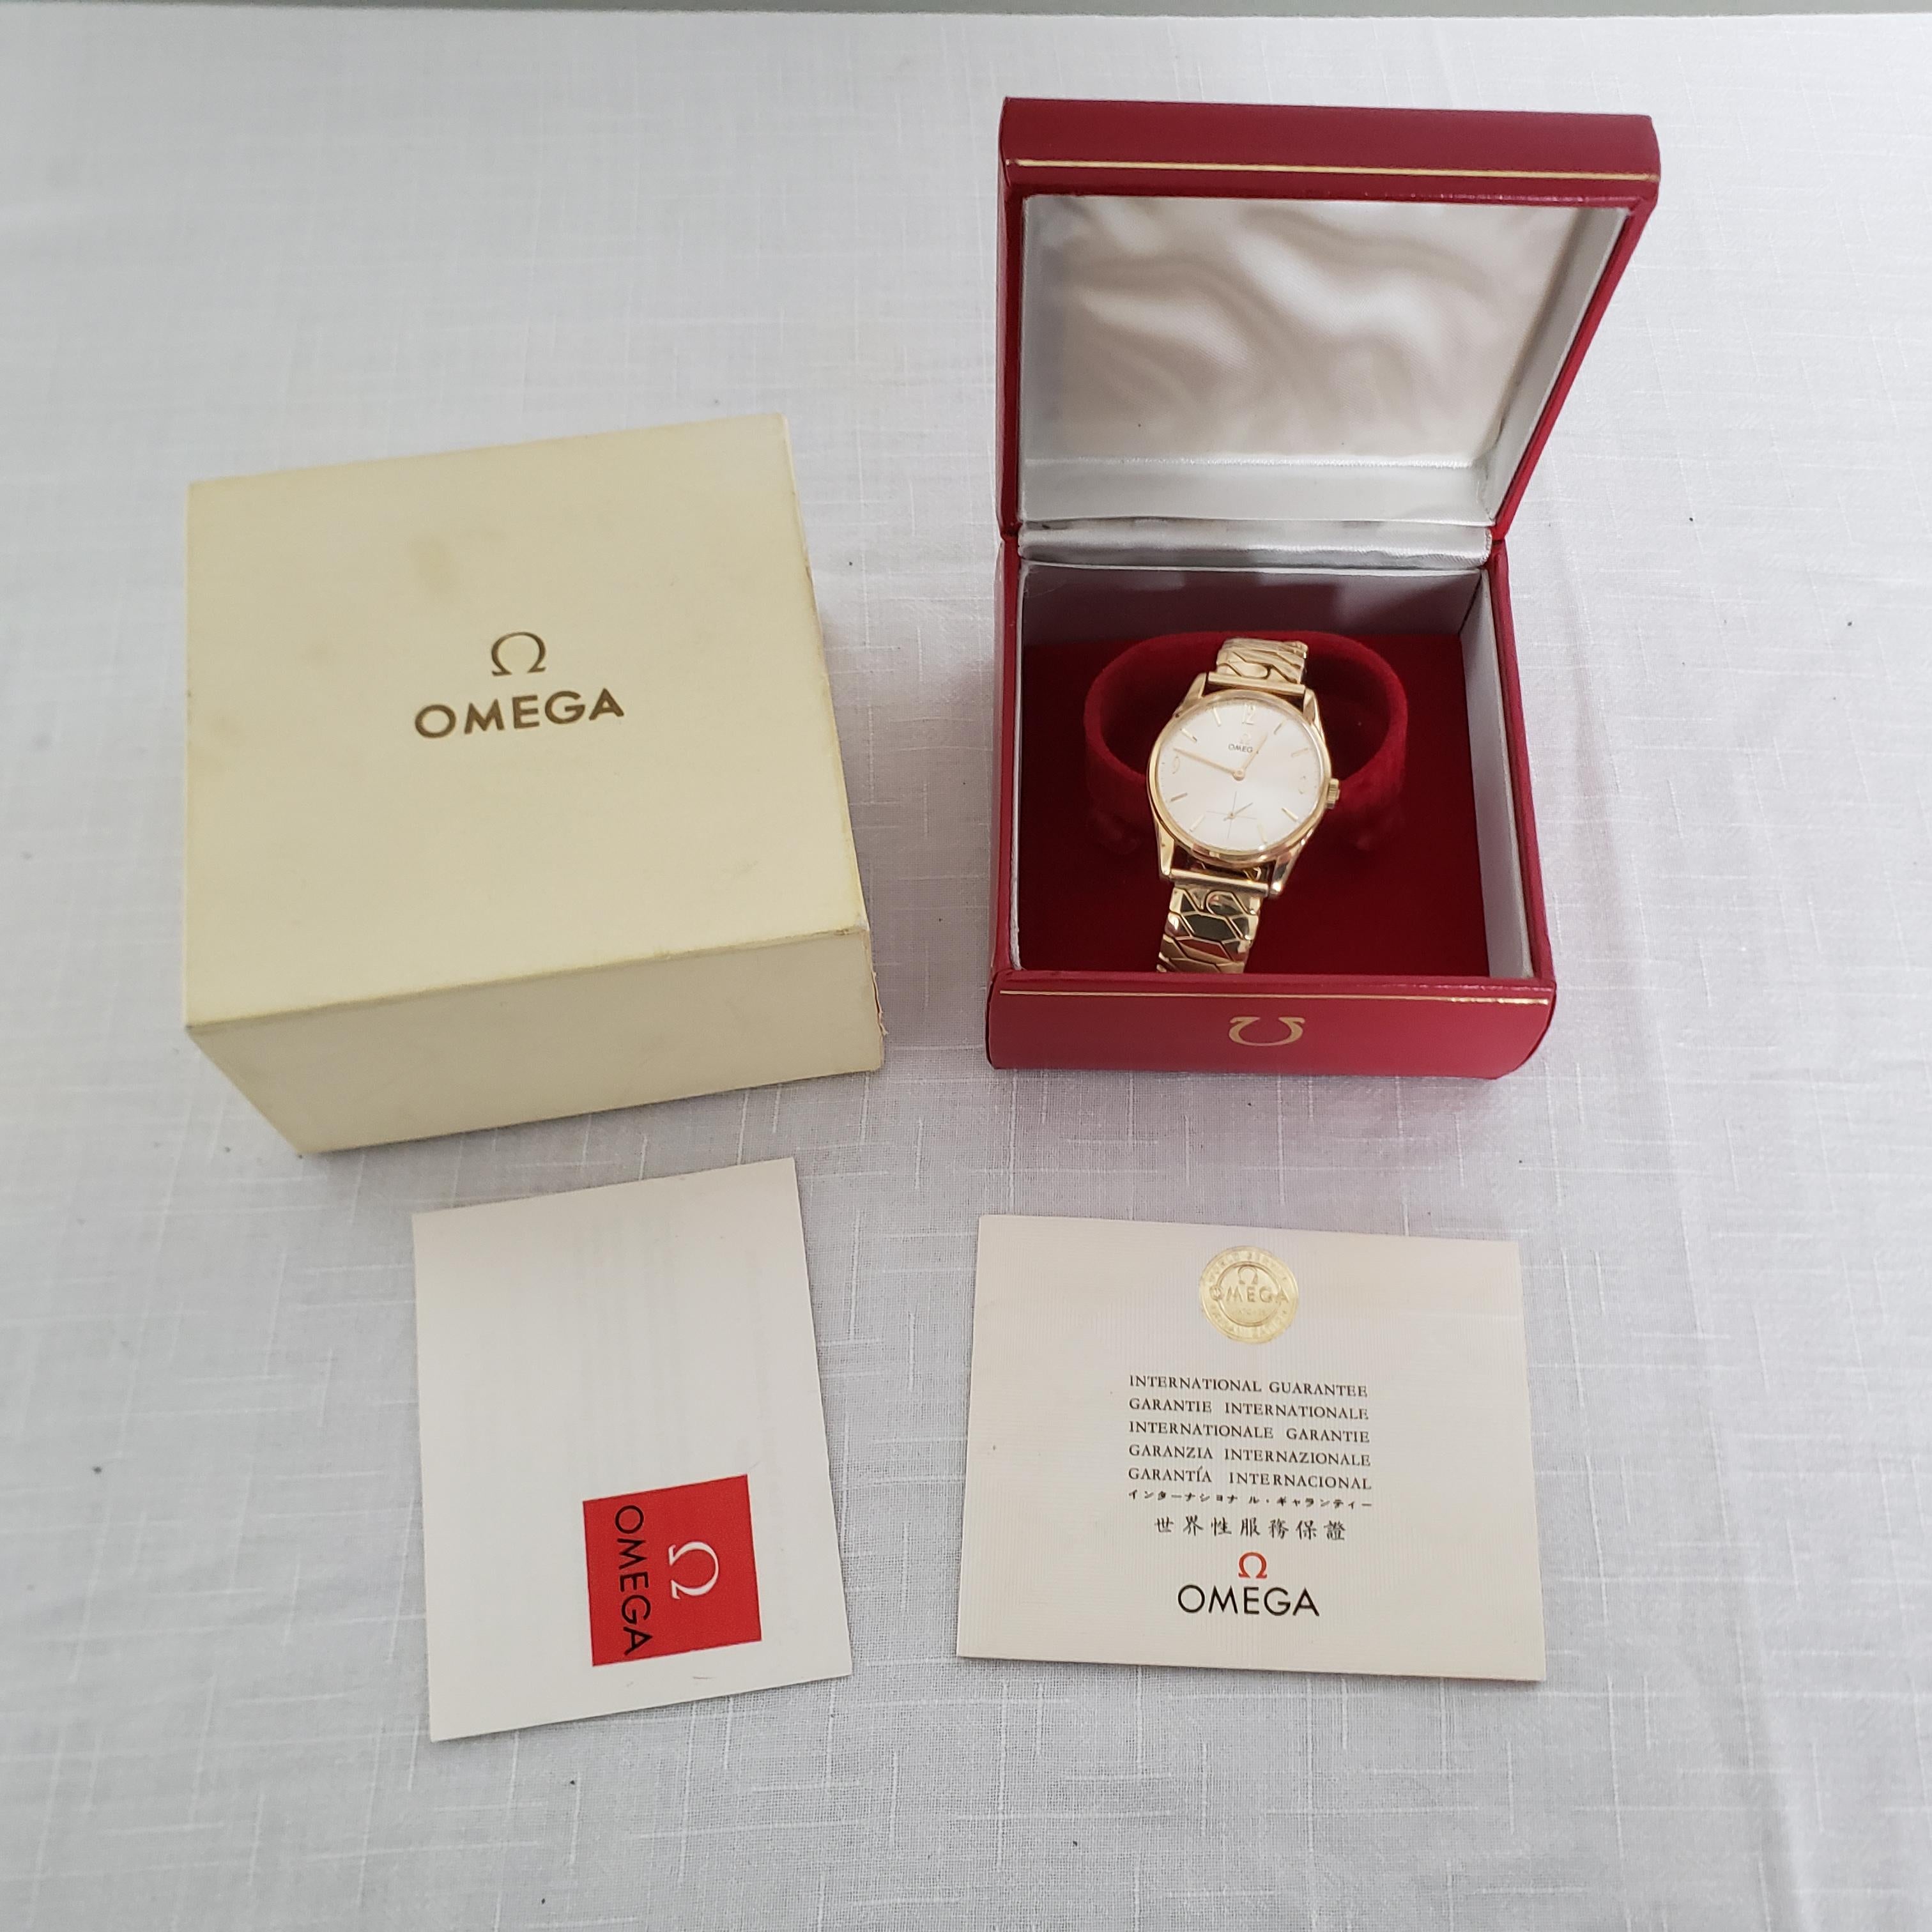 Cette montre-bracelet pour homme en or jaune 9 carats a été fabriquée par la très renommée société horlogère suisse Omega vers 1965 dans le style moderne du milieu du siècle. La montre est en état neuf/ancien stock et ne présente pas de rayures ni